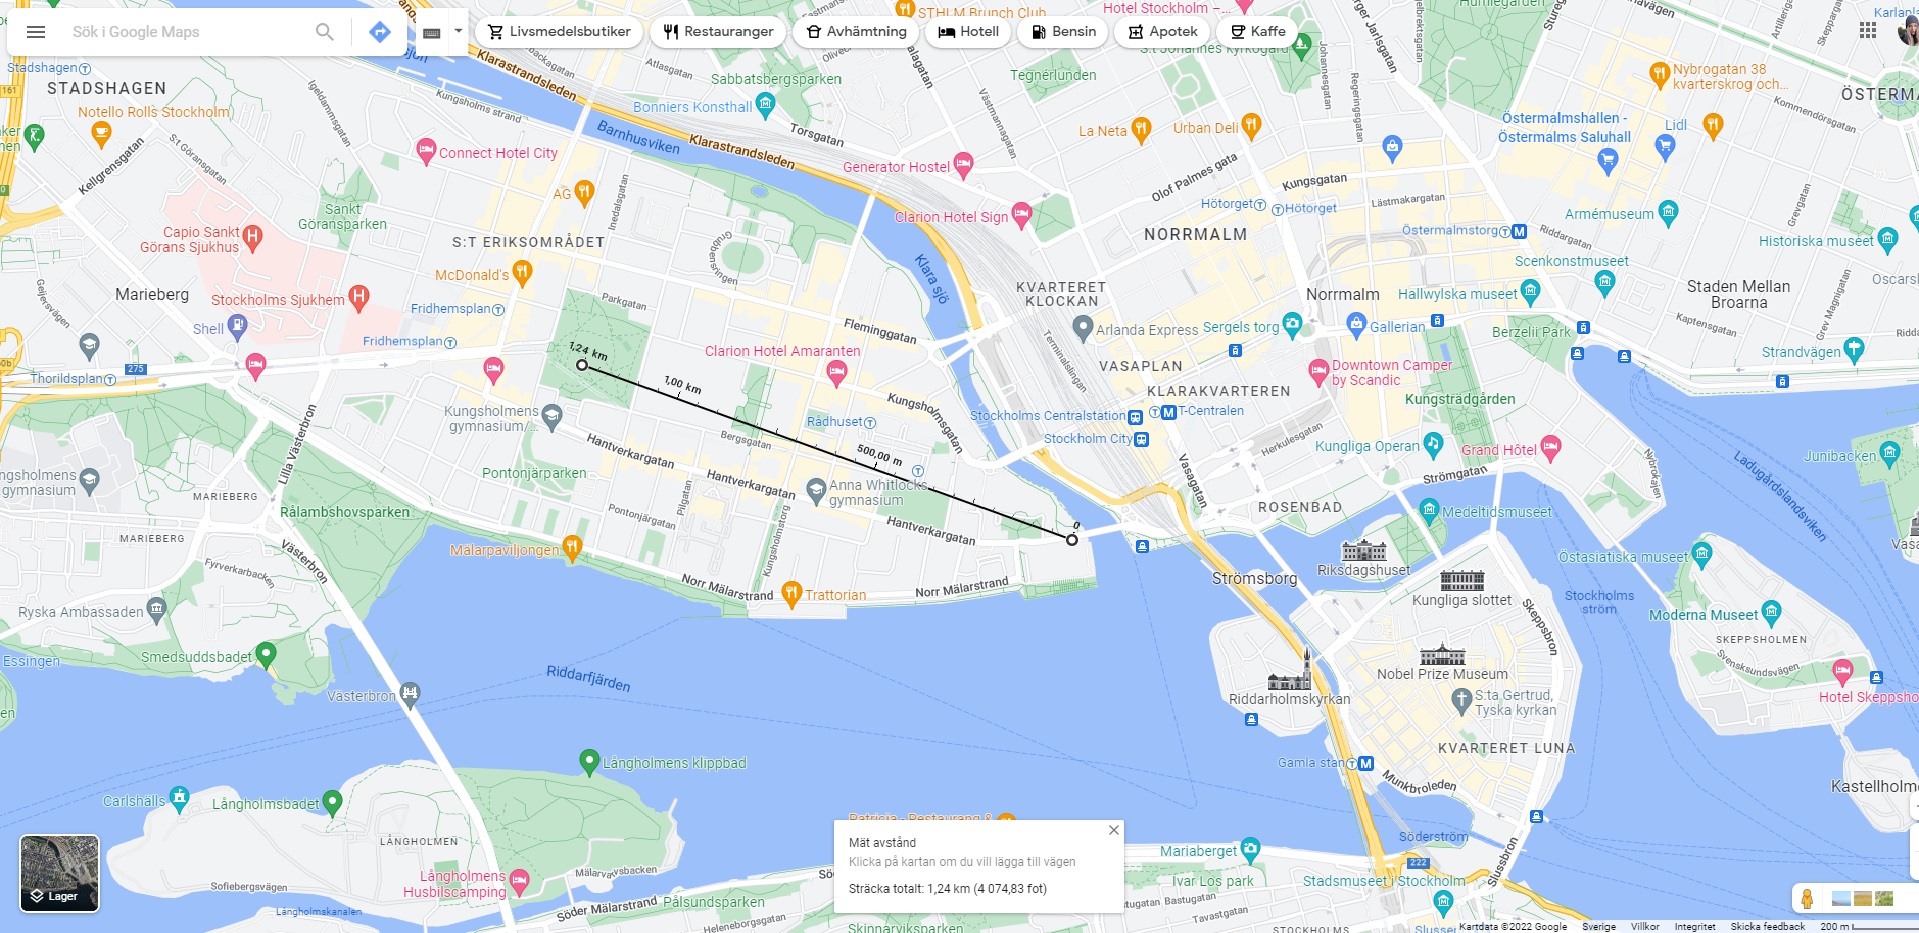 En mätning gjord i Google Maps mellan Stockholms stadshus och Kronobergsparken